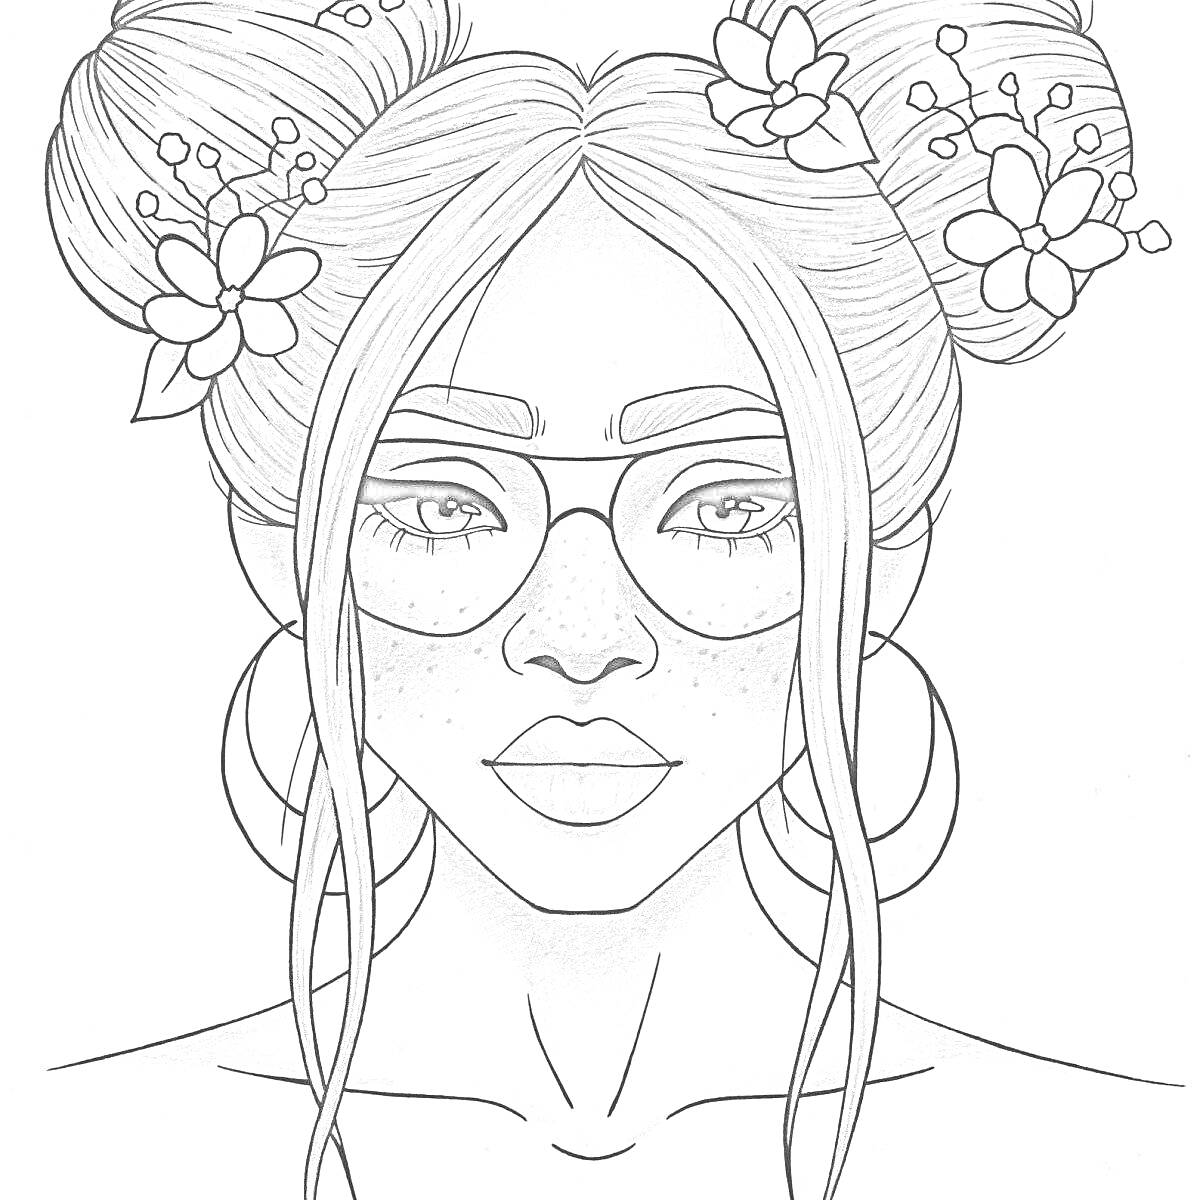 Раскраска Девушка с двумя пучками, цветами в волосах и большими кольцами в ушах, на лице очки и веснушки